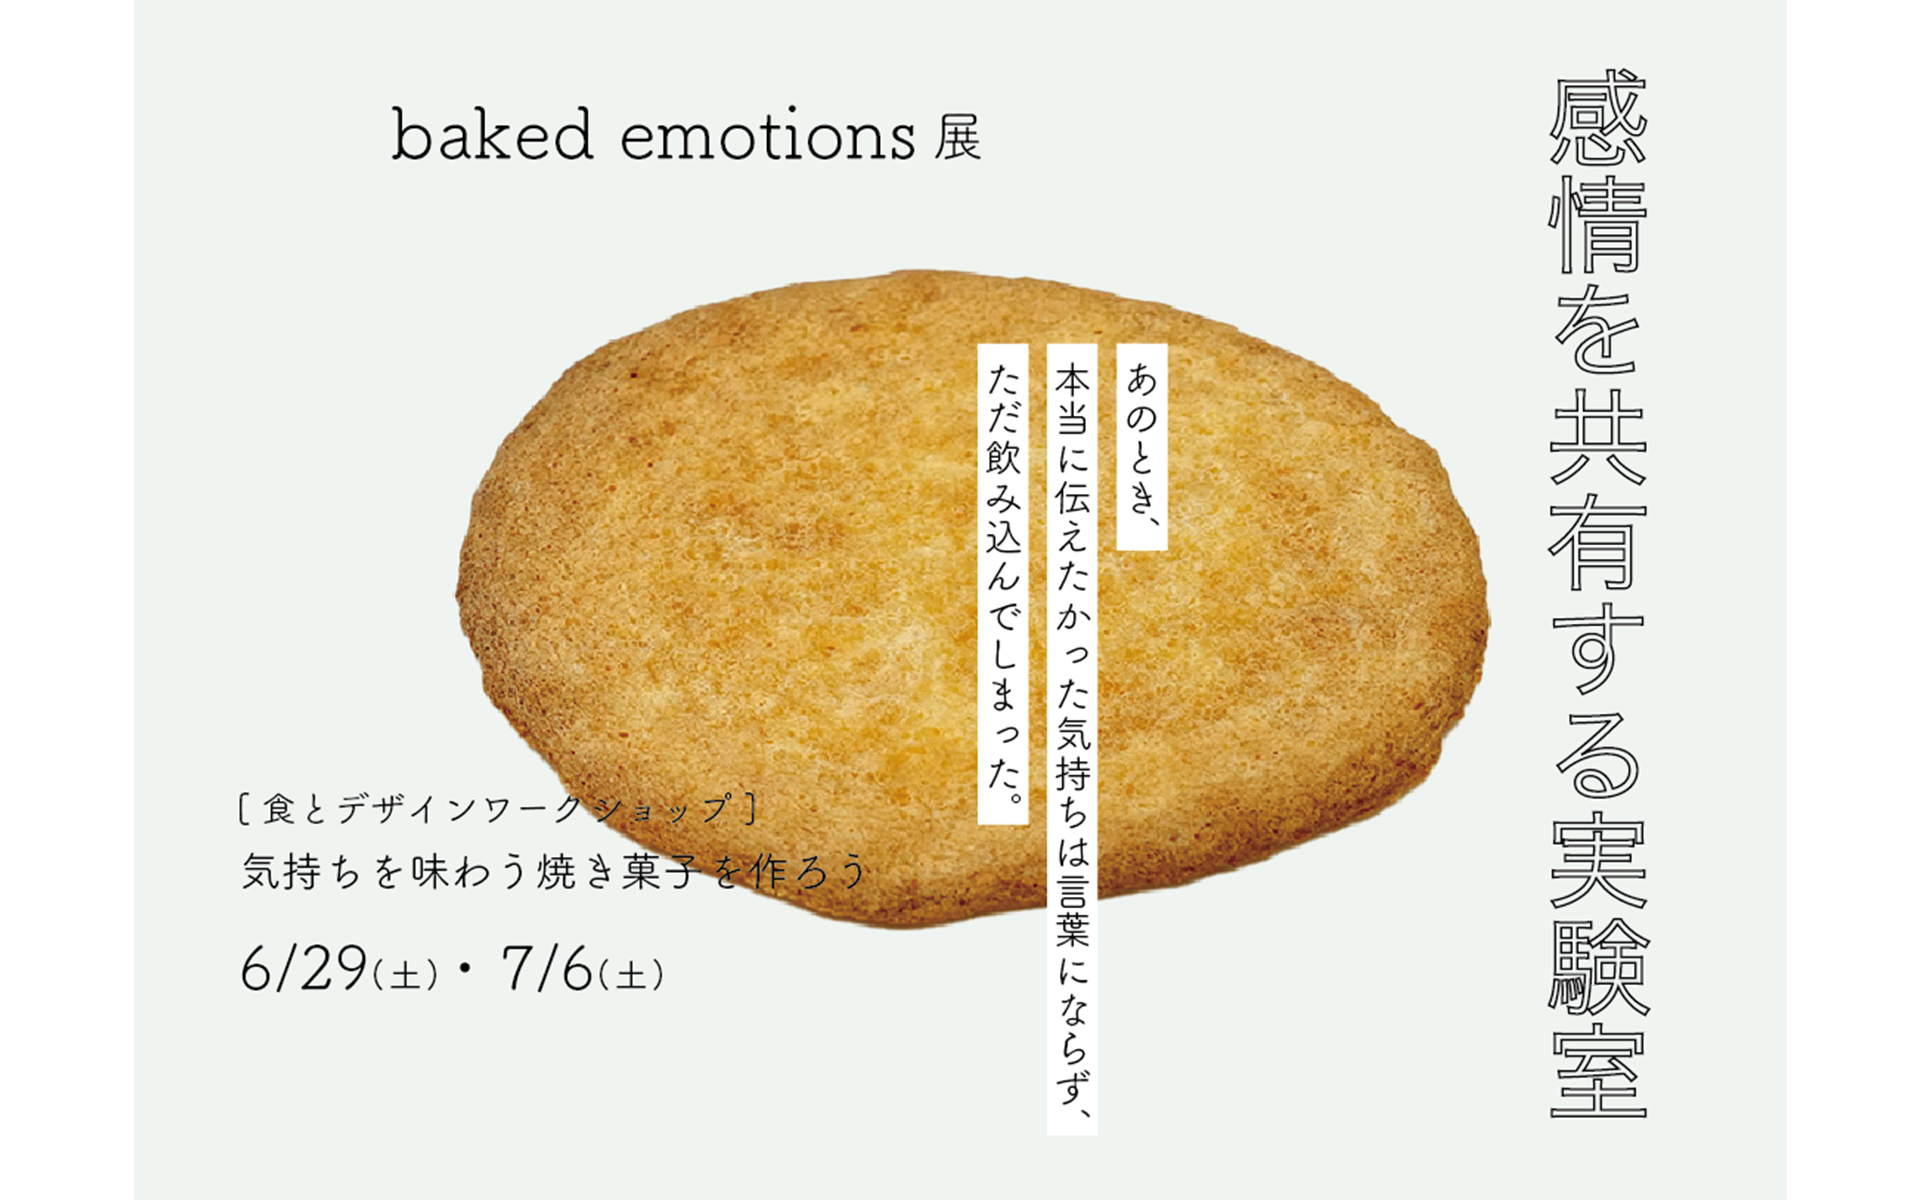 感情を共有する実験室 ー”baked emotions”展